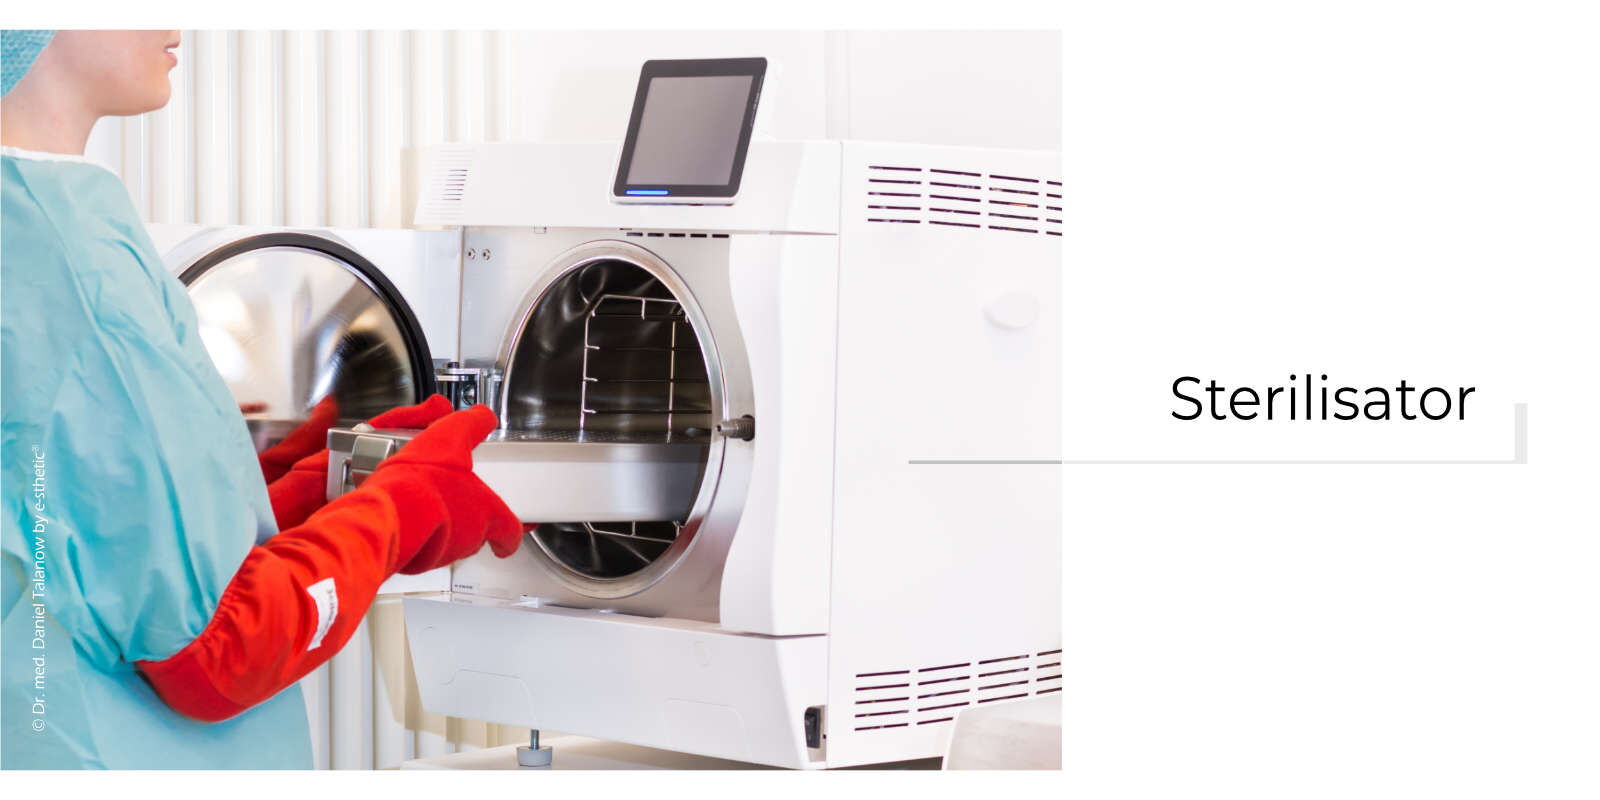 Der Sterilisator ist das Gerät, welches elektronisch gesteuert die aufzubereitenden Siebe und Instrumente nachweisbar keimfrei/steril macht